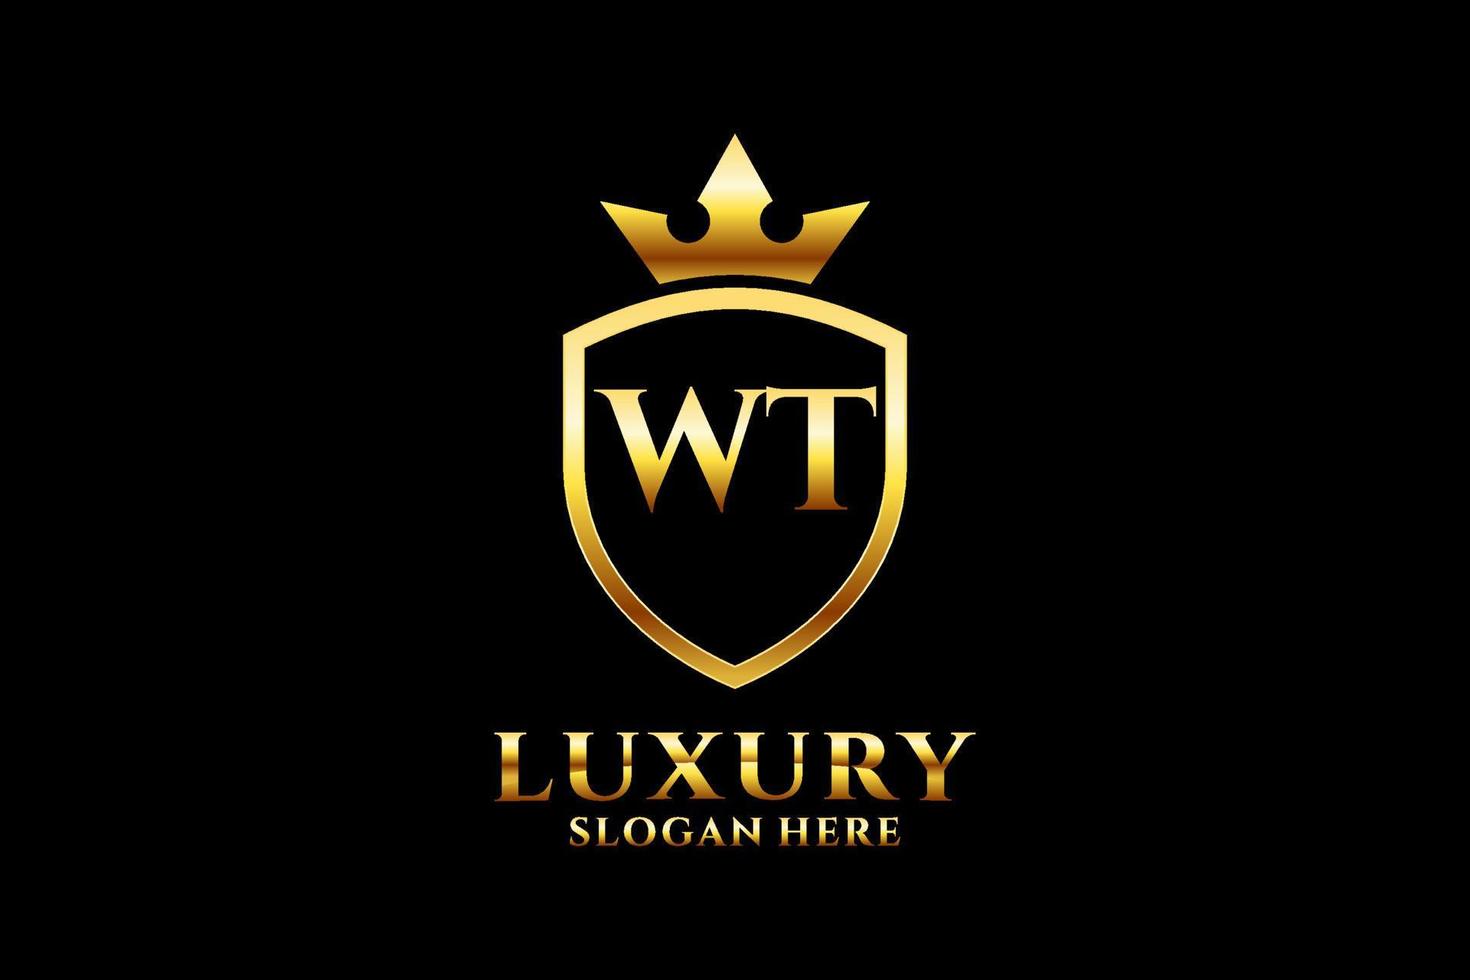 Initial wt elegantes Luxus-Monogramm-Logo oder Abzeichen-Vorlage mit Schriftrollen und königlicher Krone – perfekt für luxuriöse Branding-Projekte vektor